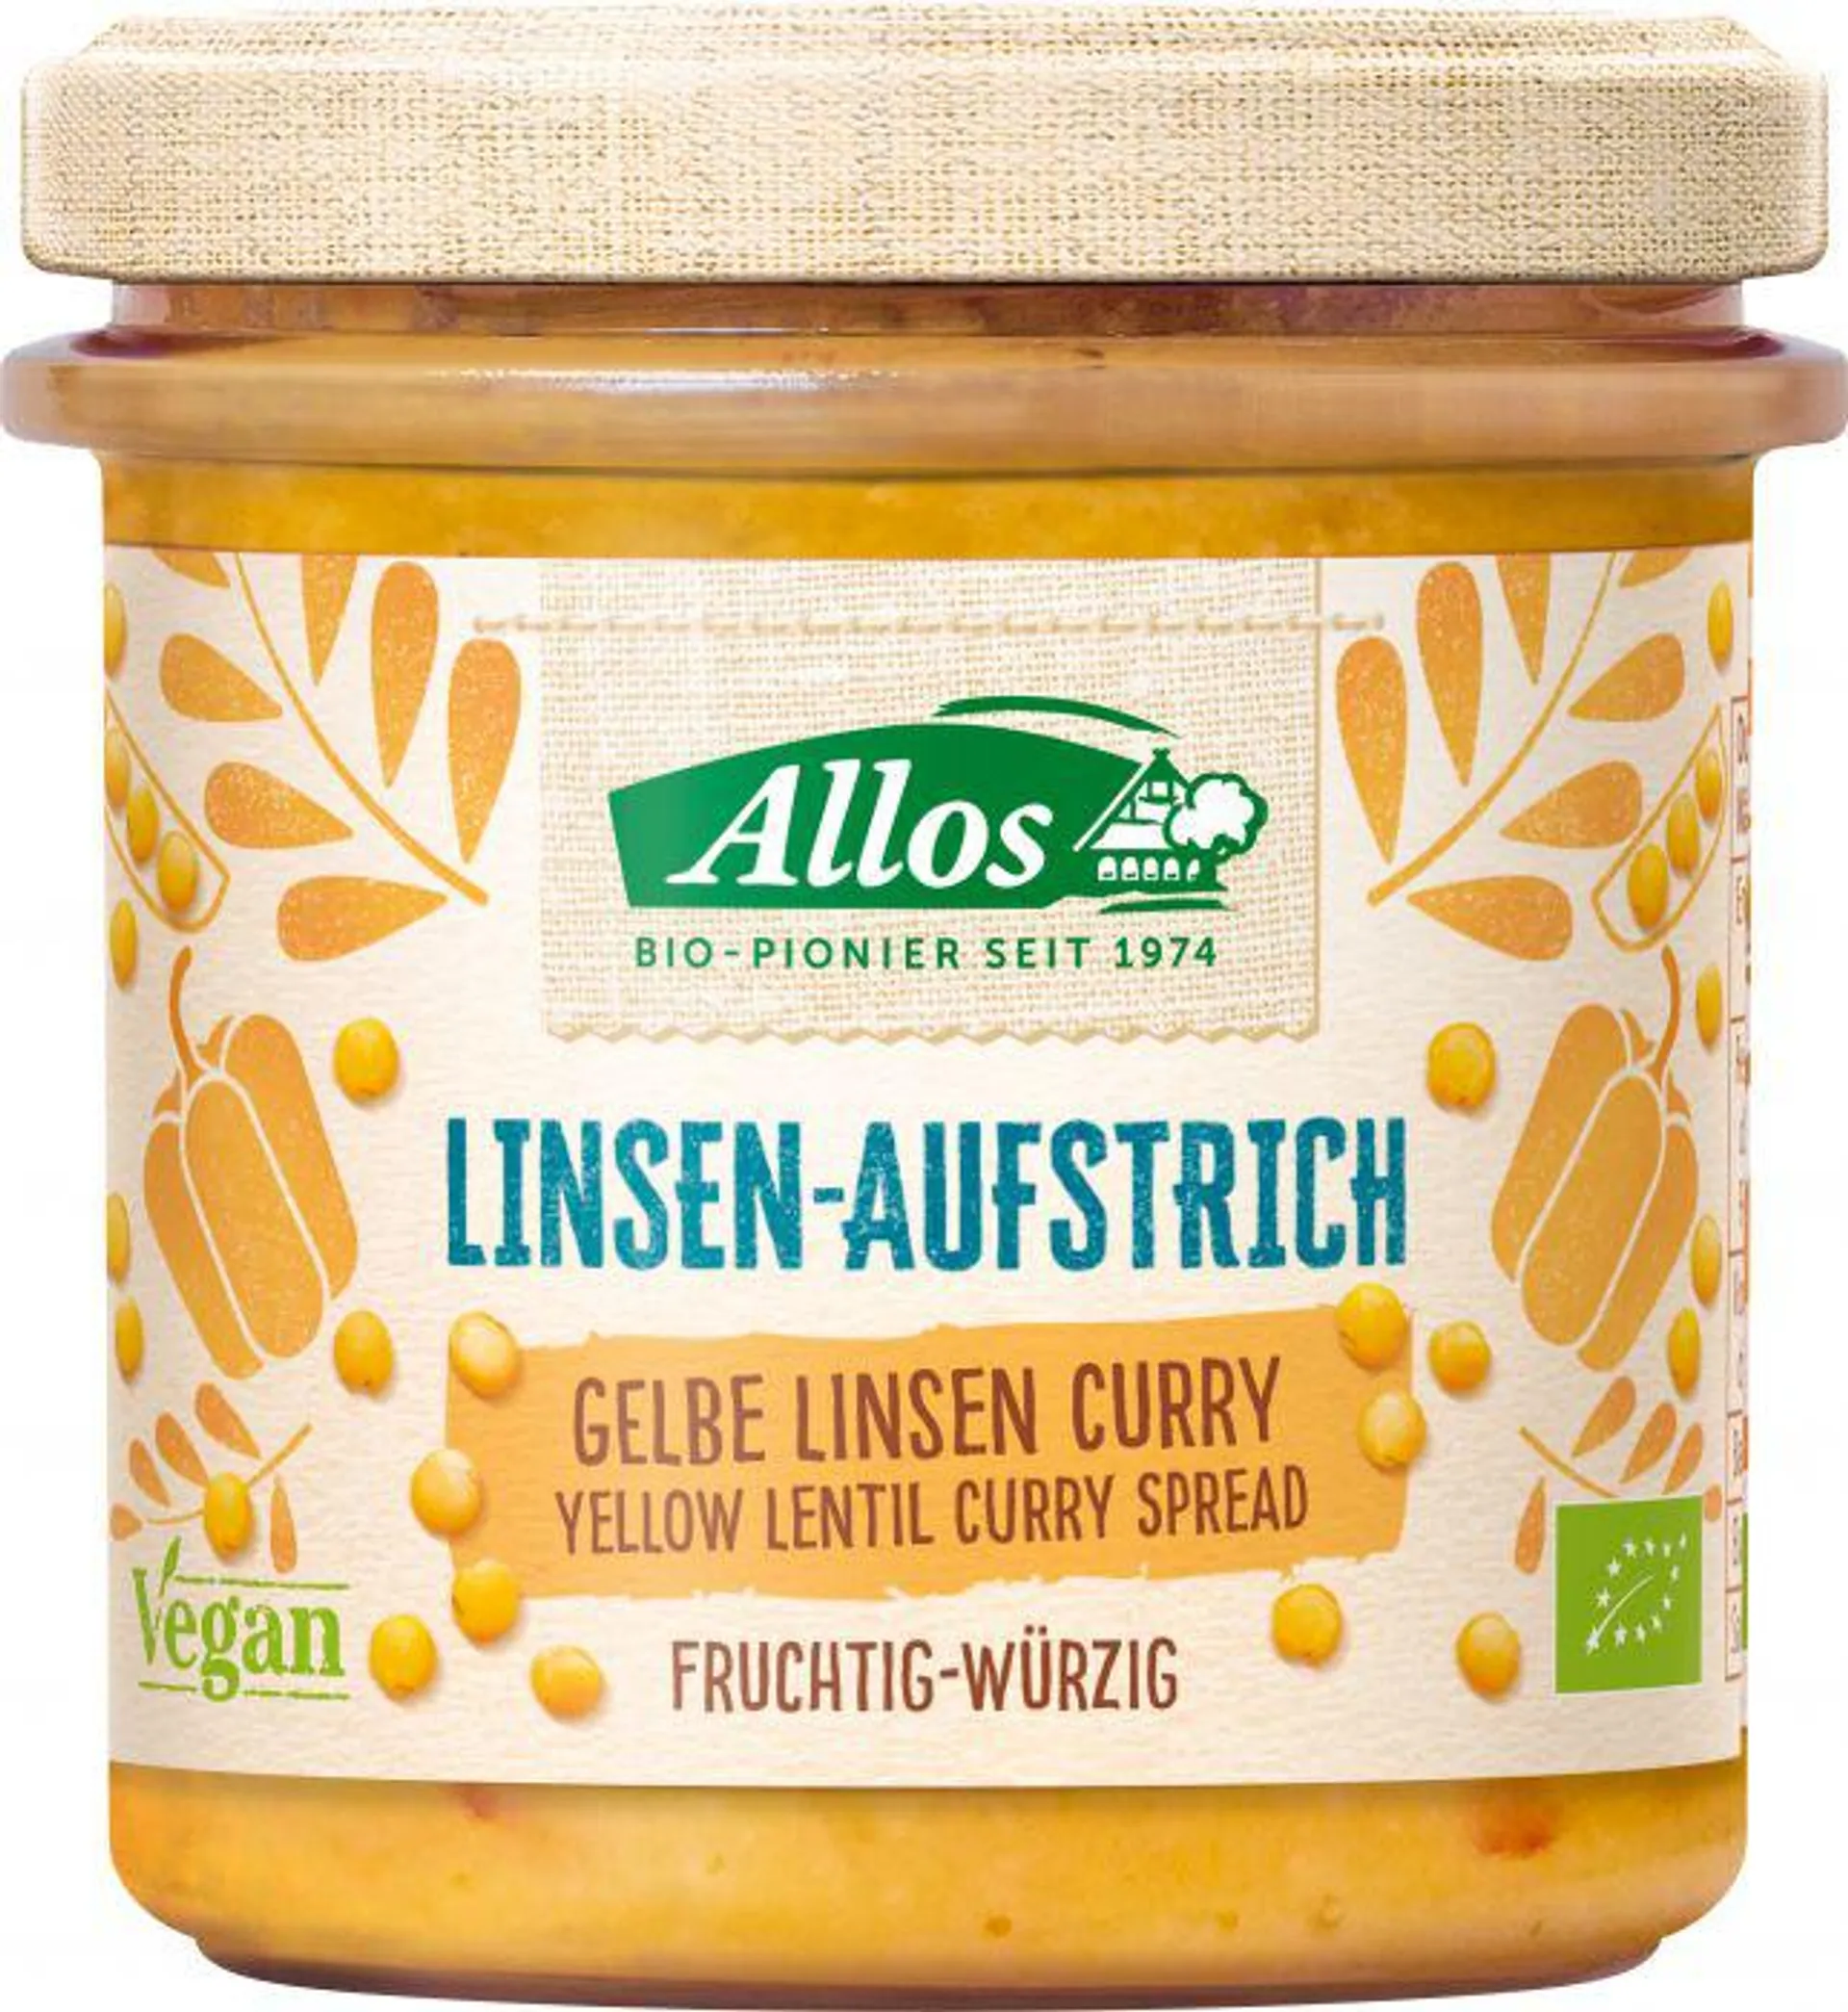 Allos Linsen-Aufstrich Gelbe Linse Curry 140g